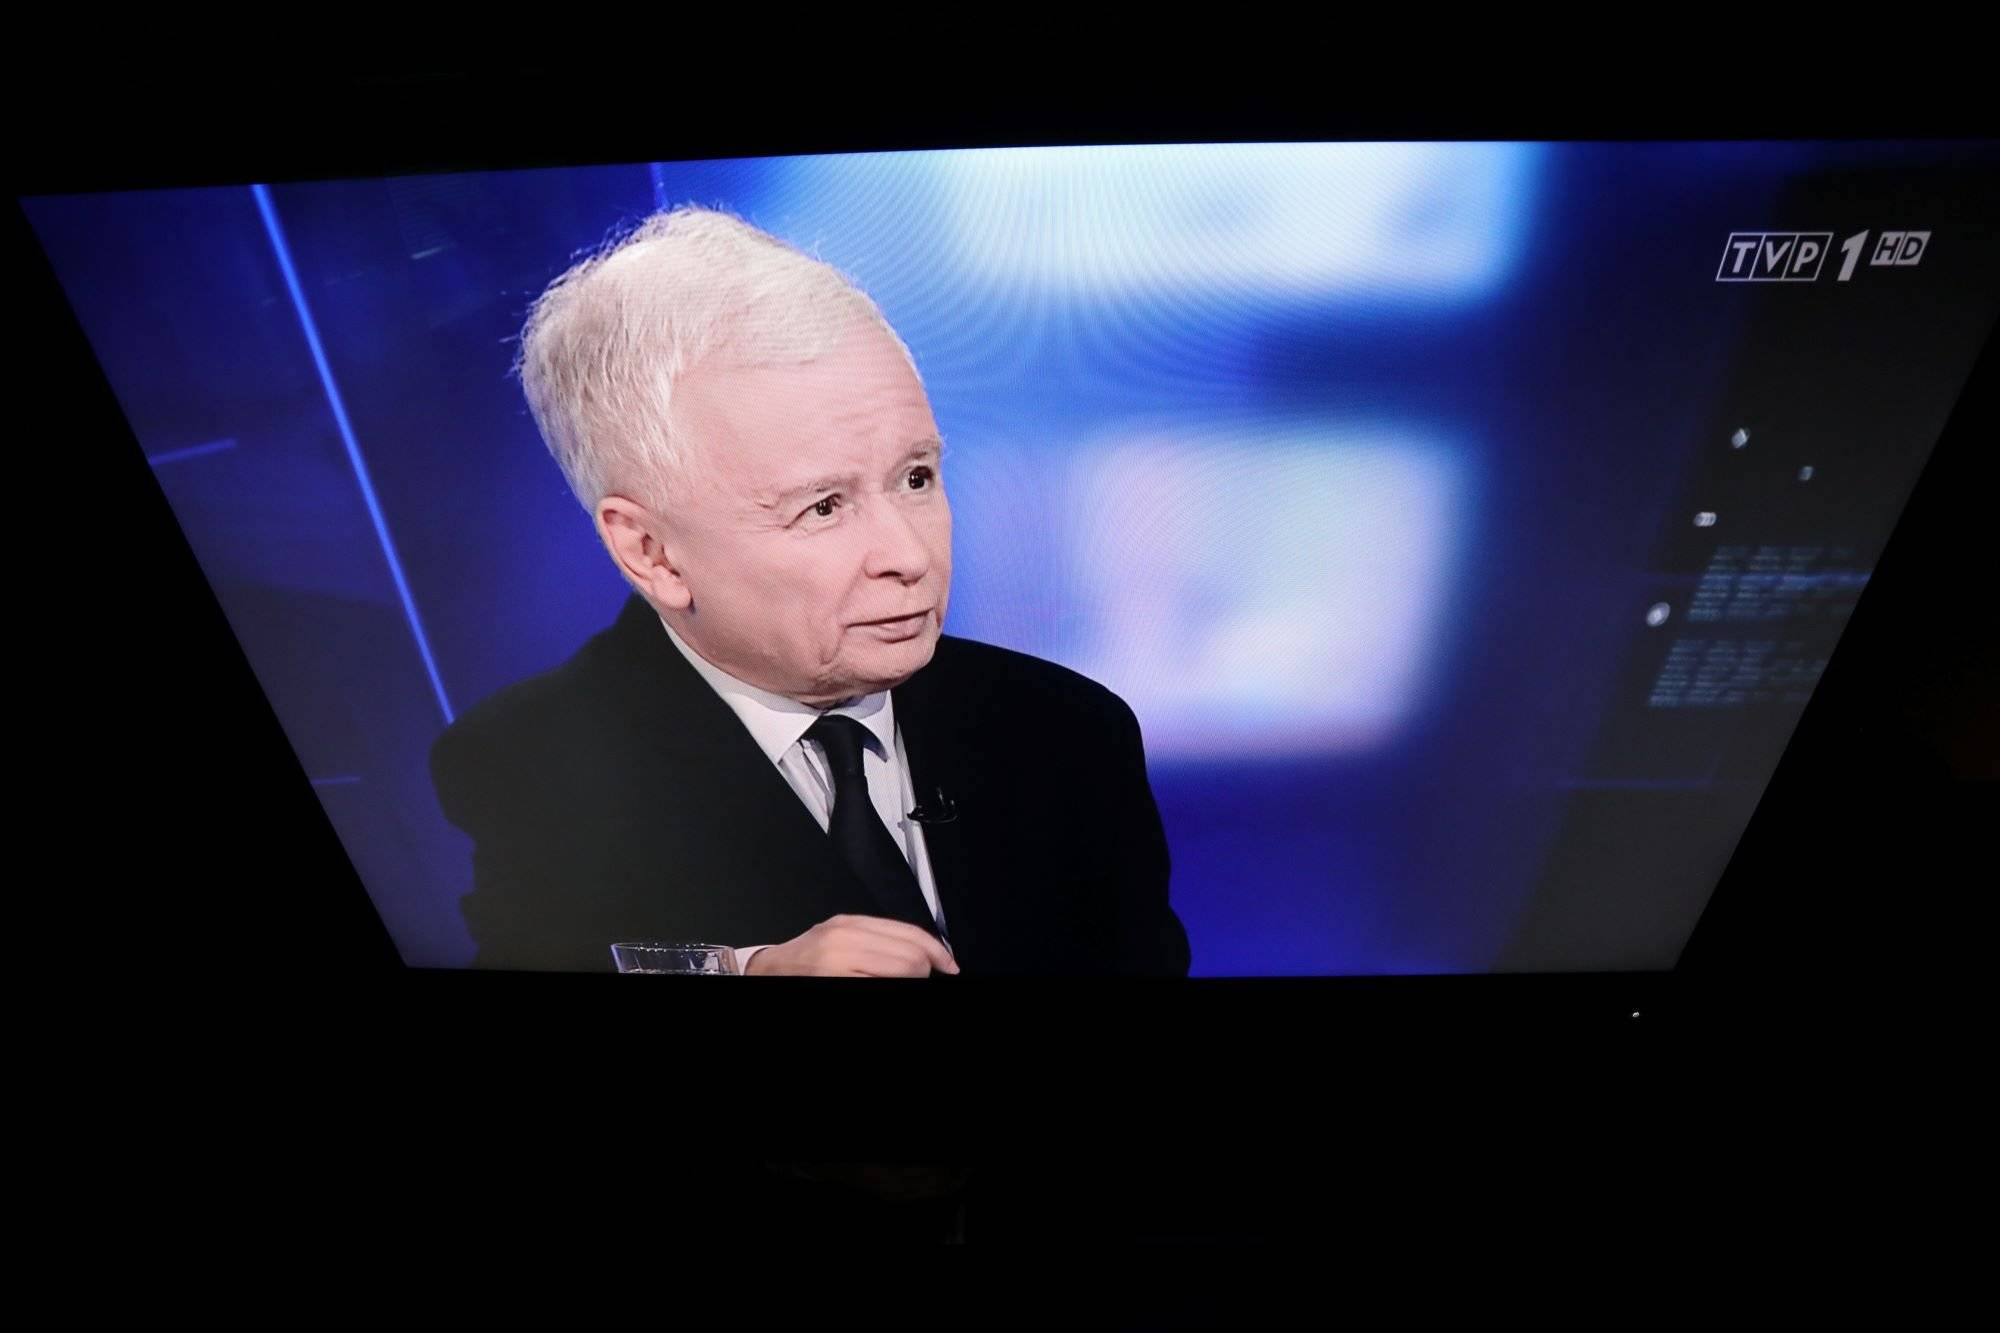 Głowa kaczyńskiego na ekranie telewizora